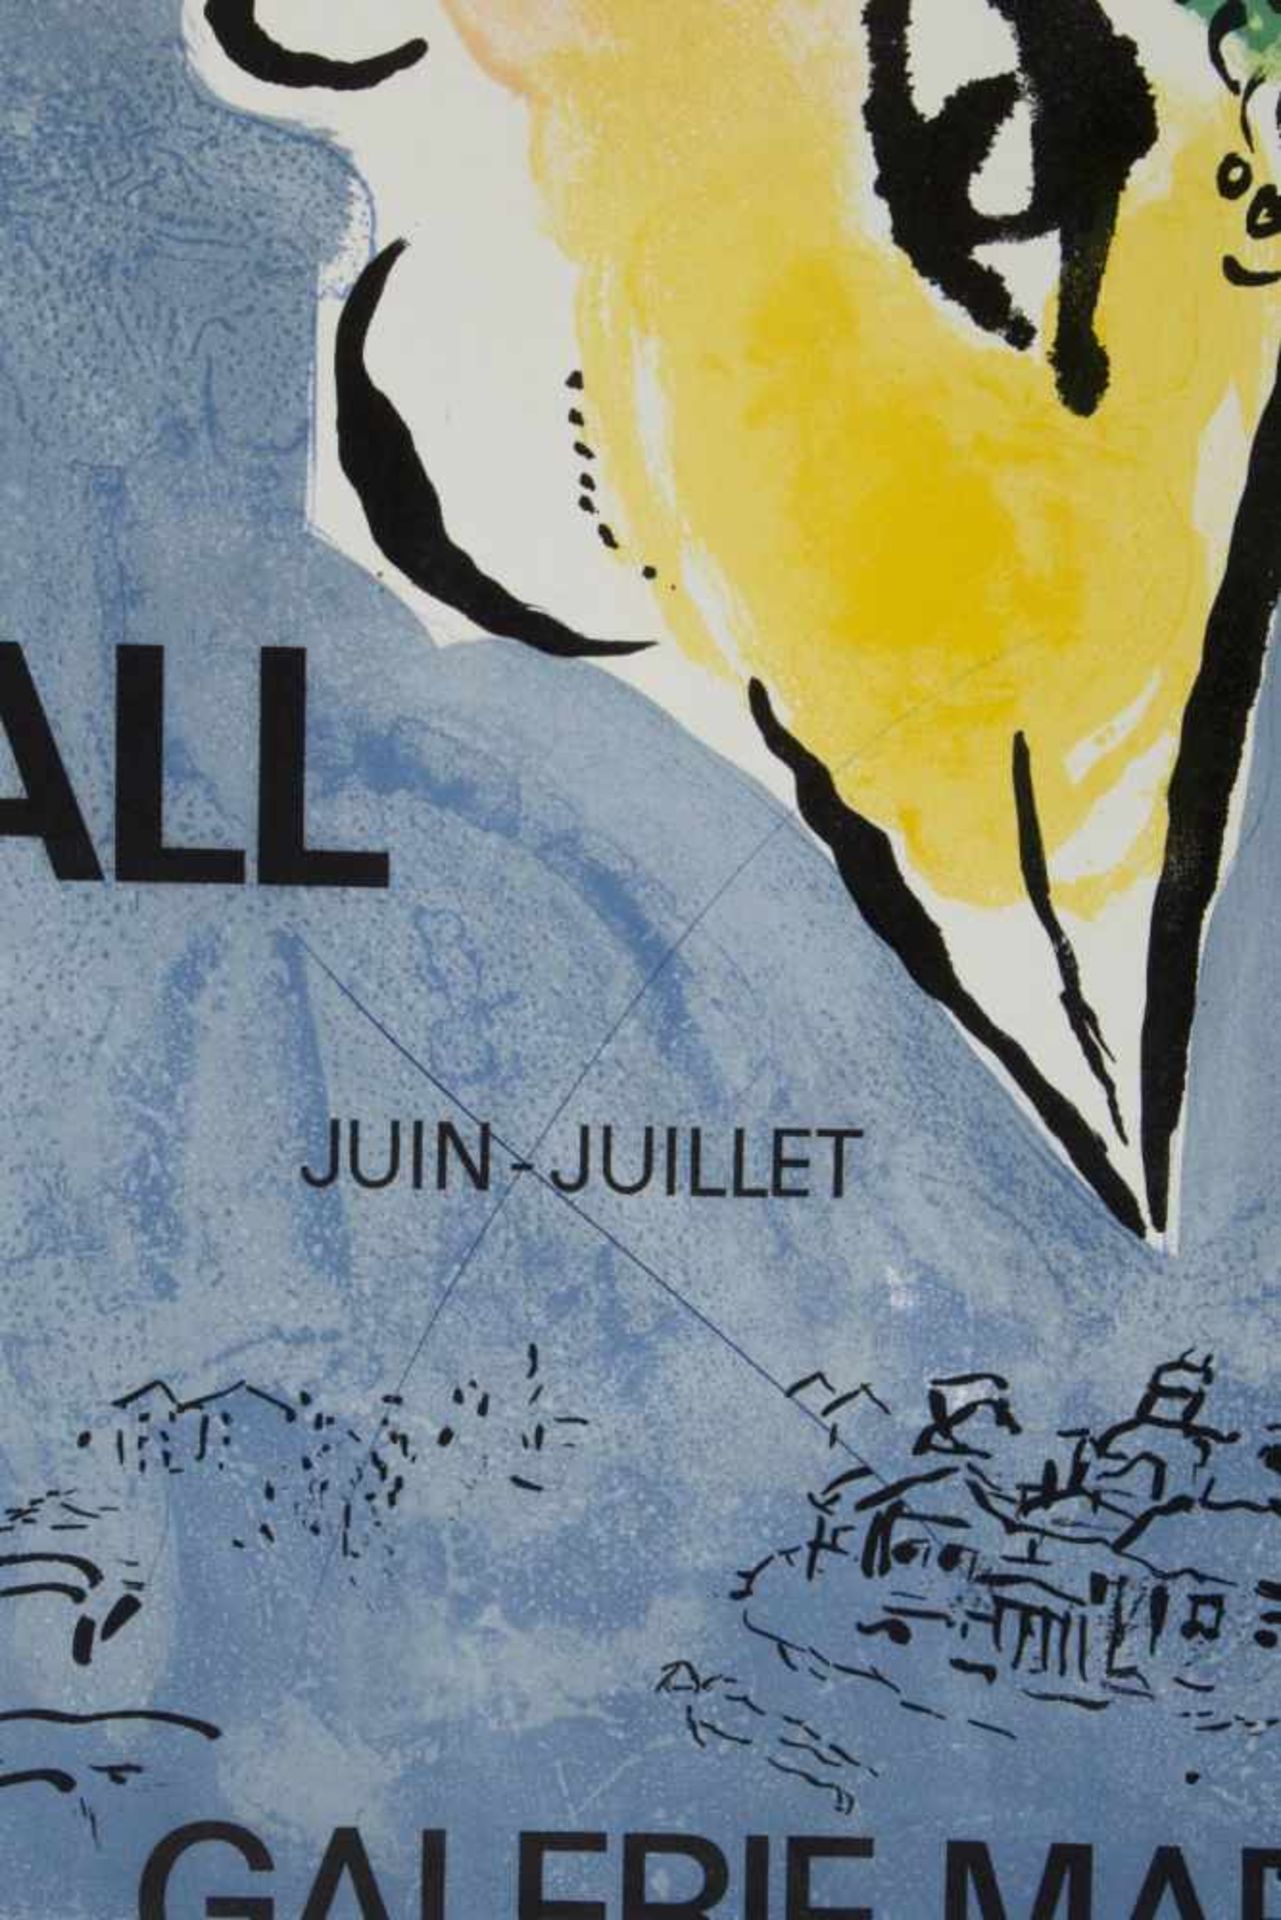 Picasso. Janssen. Chagall u.a.Ausstellungsplakate u.a. 16 Bll. versch. Techn. Bis 55,5 x 103 cm. - Image 4 of 5